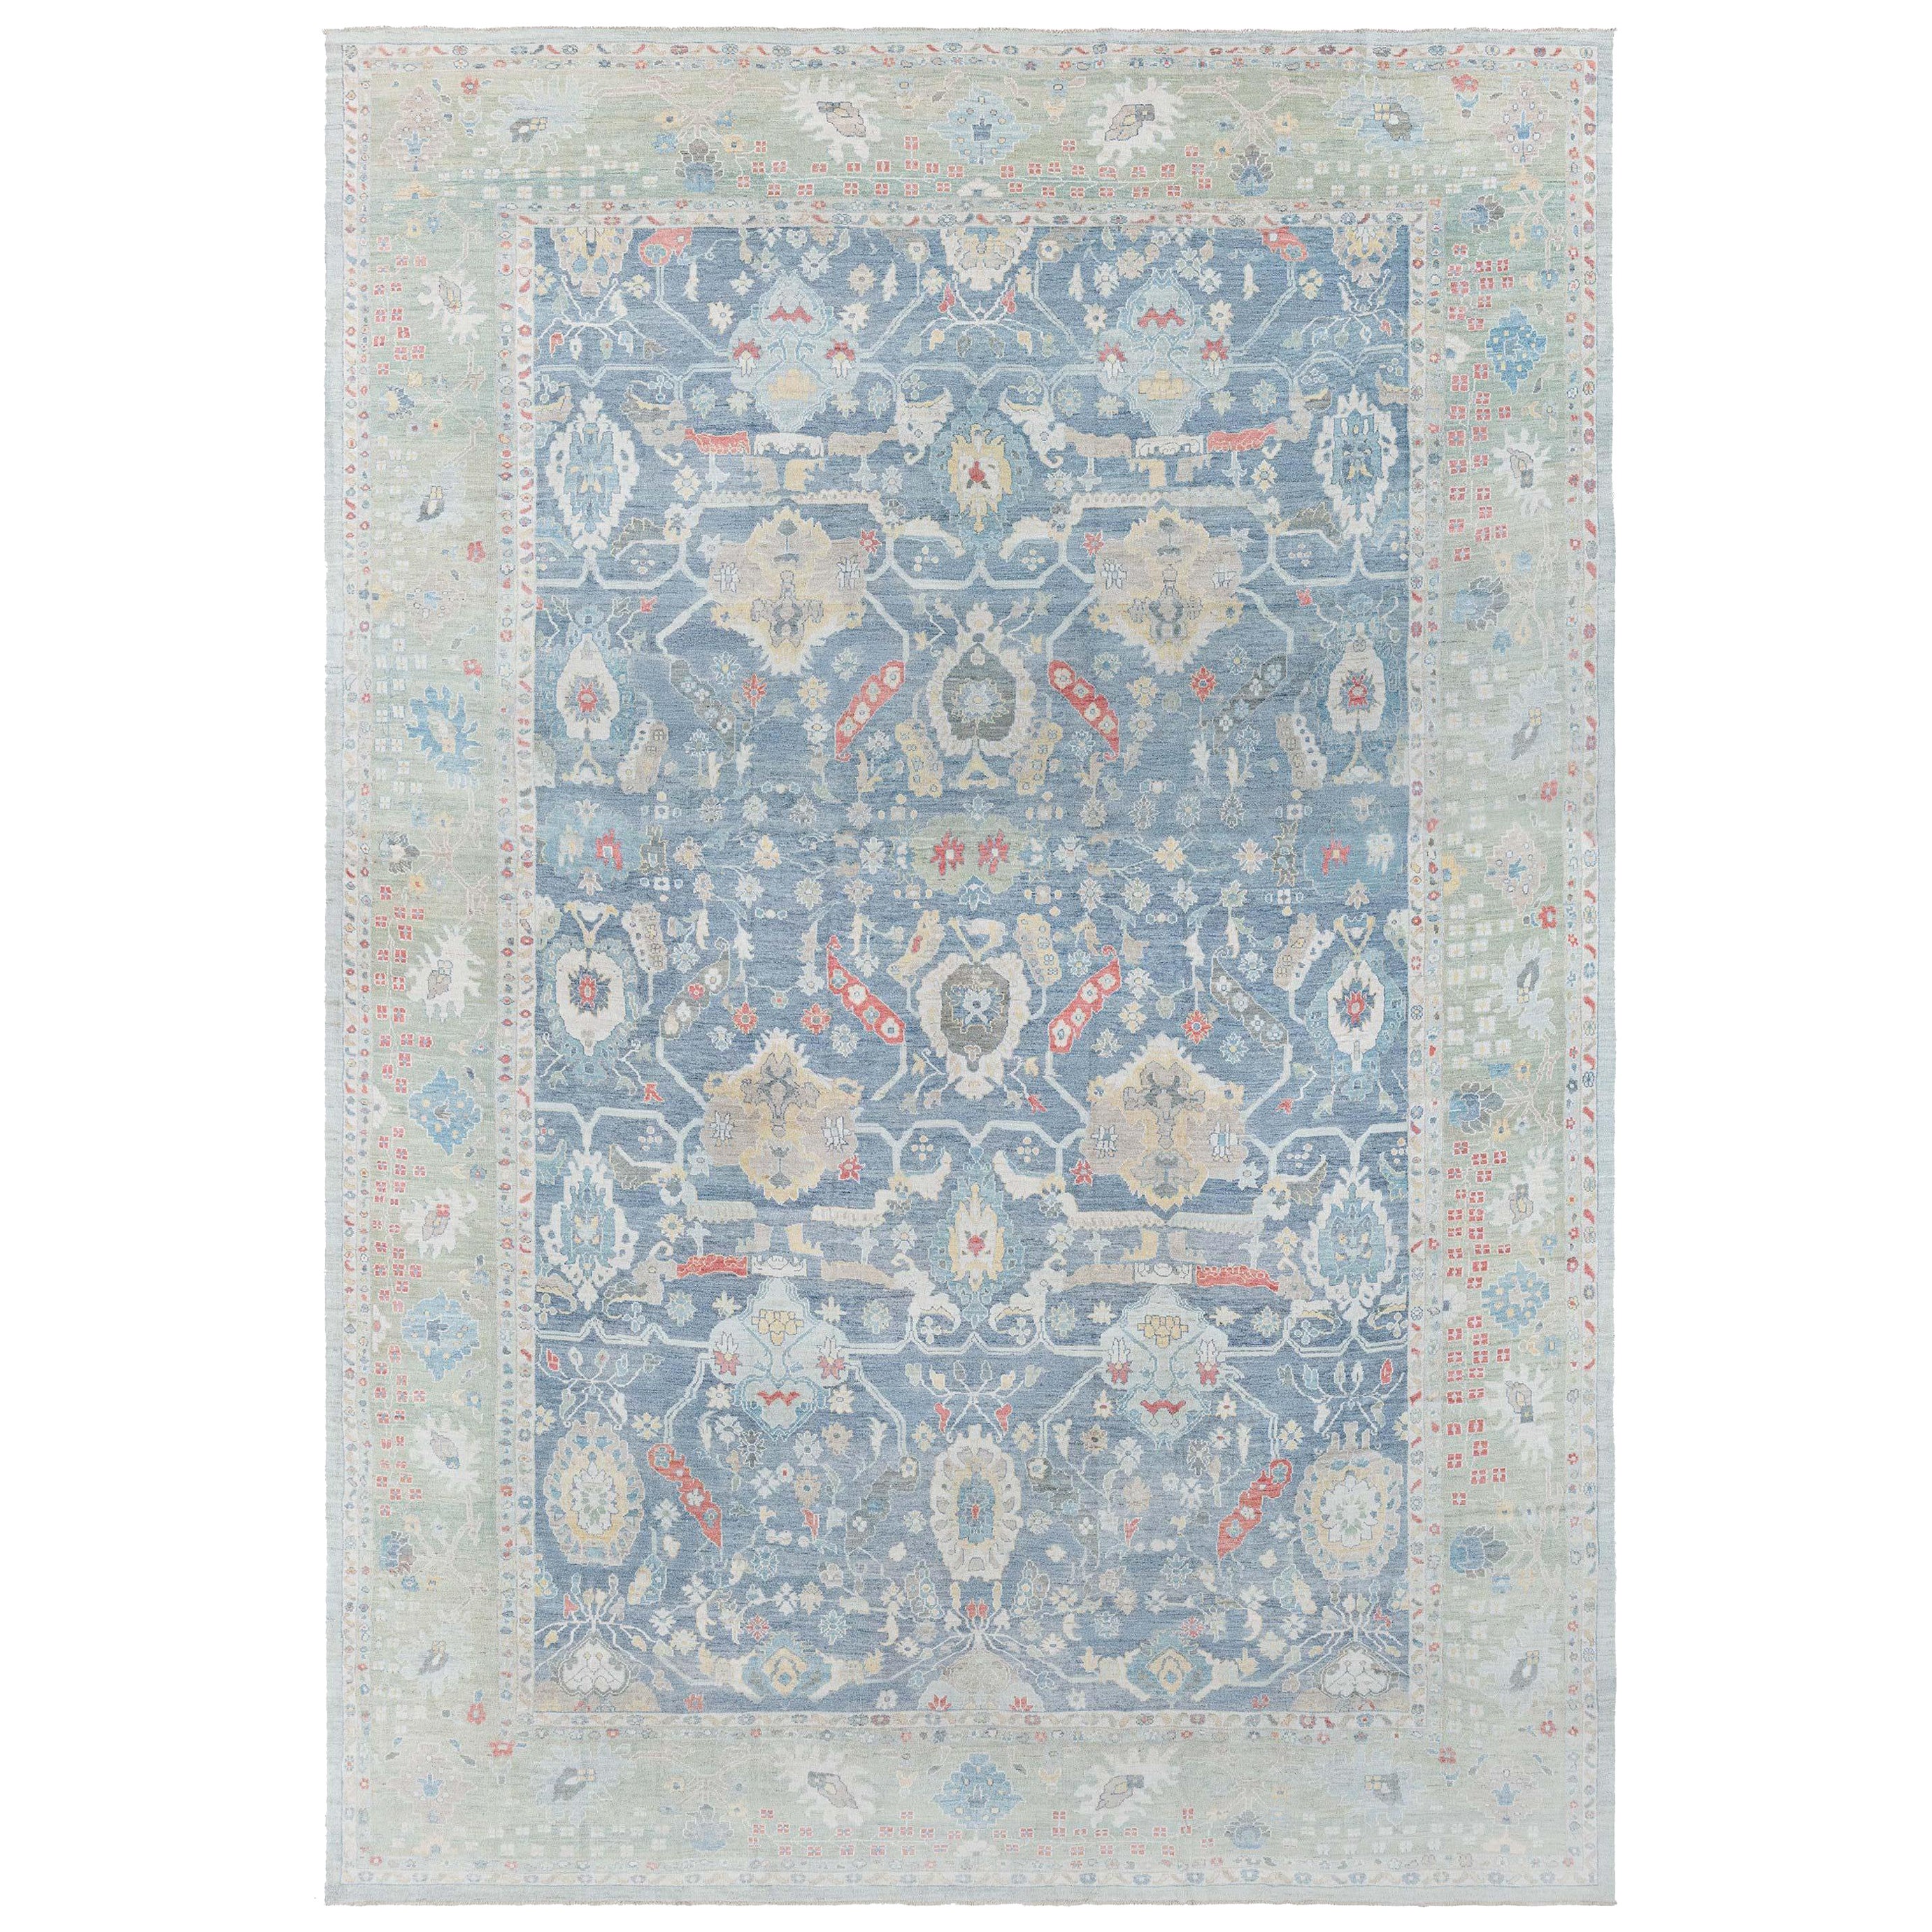 Traditionell inspirierter Teppich von Doris Leslie Blau, Moderne